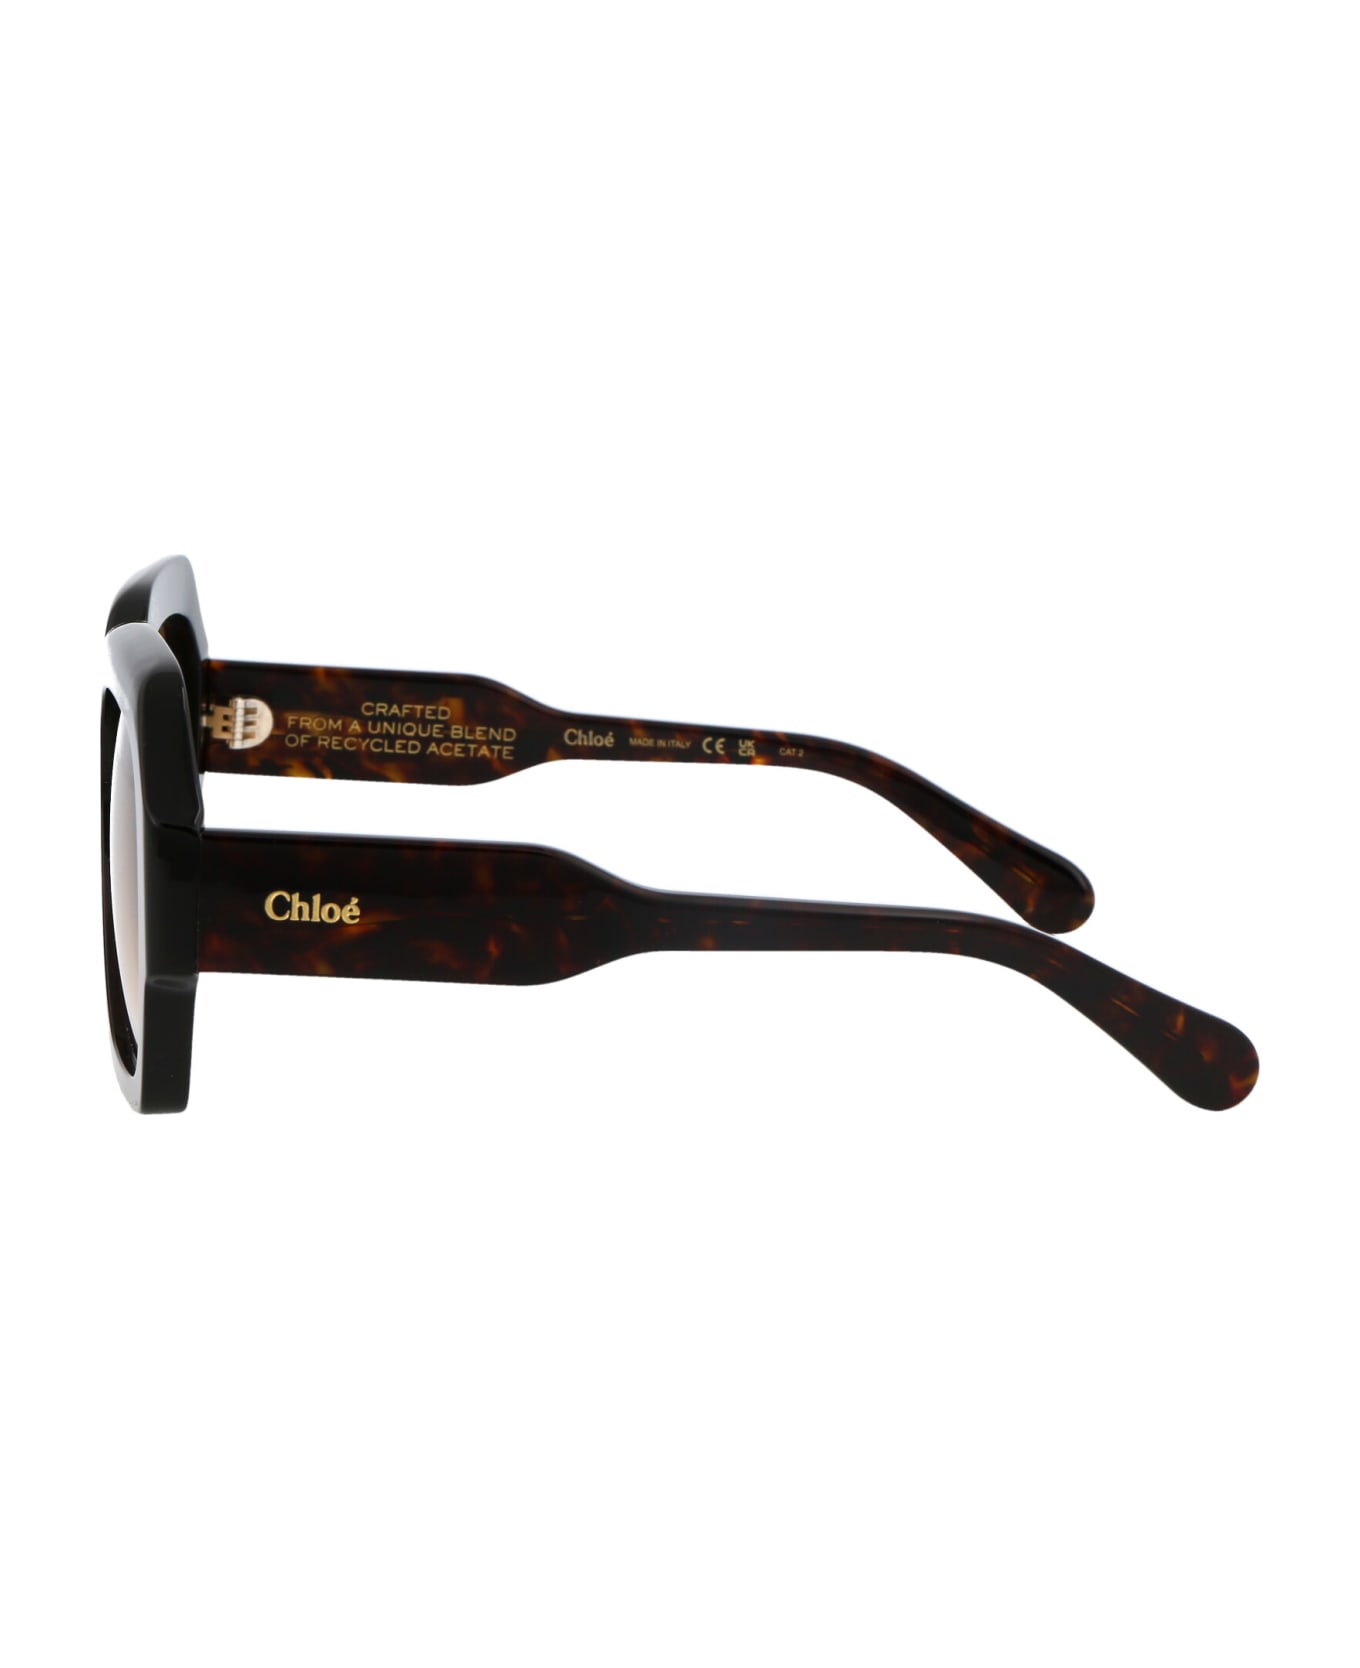 Chloé Eyewear Ch0154s Sunglasses - 002 HAVANA HAVANA BROWN